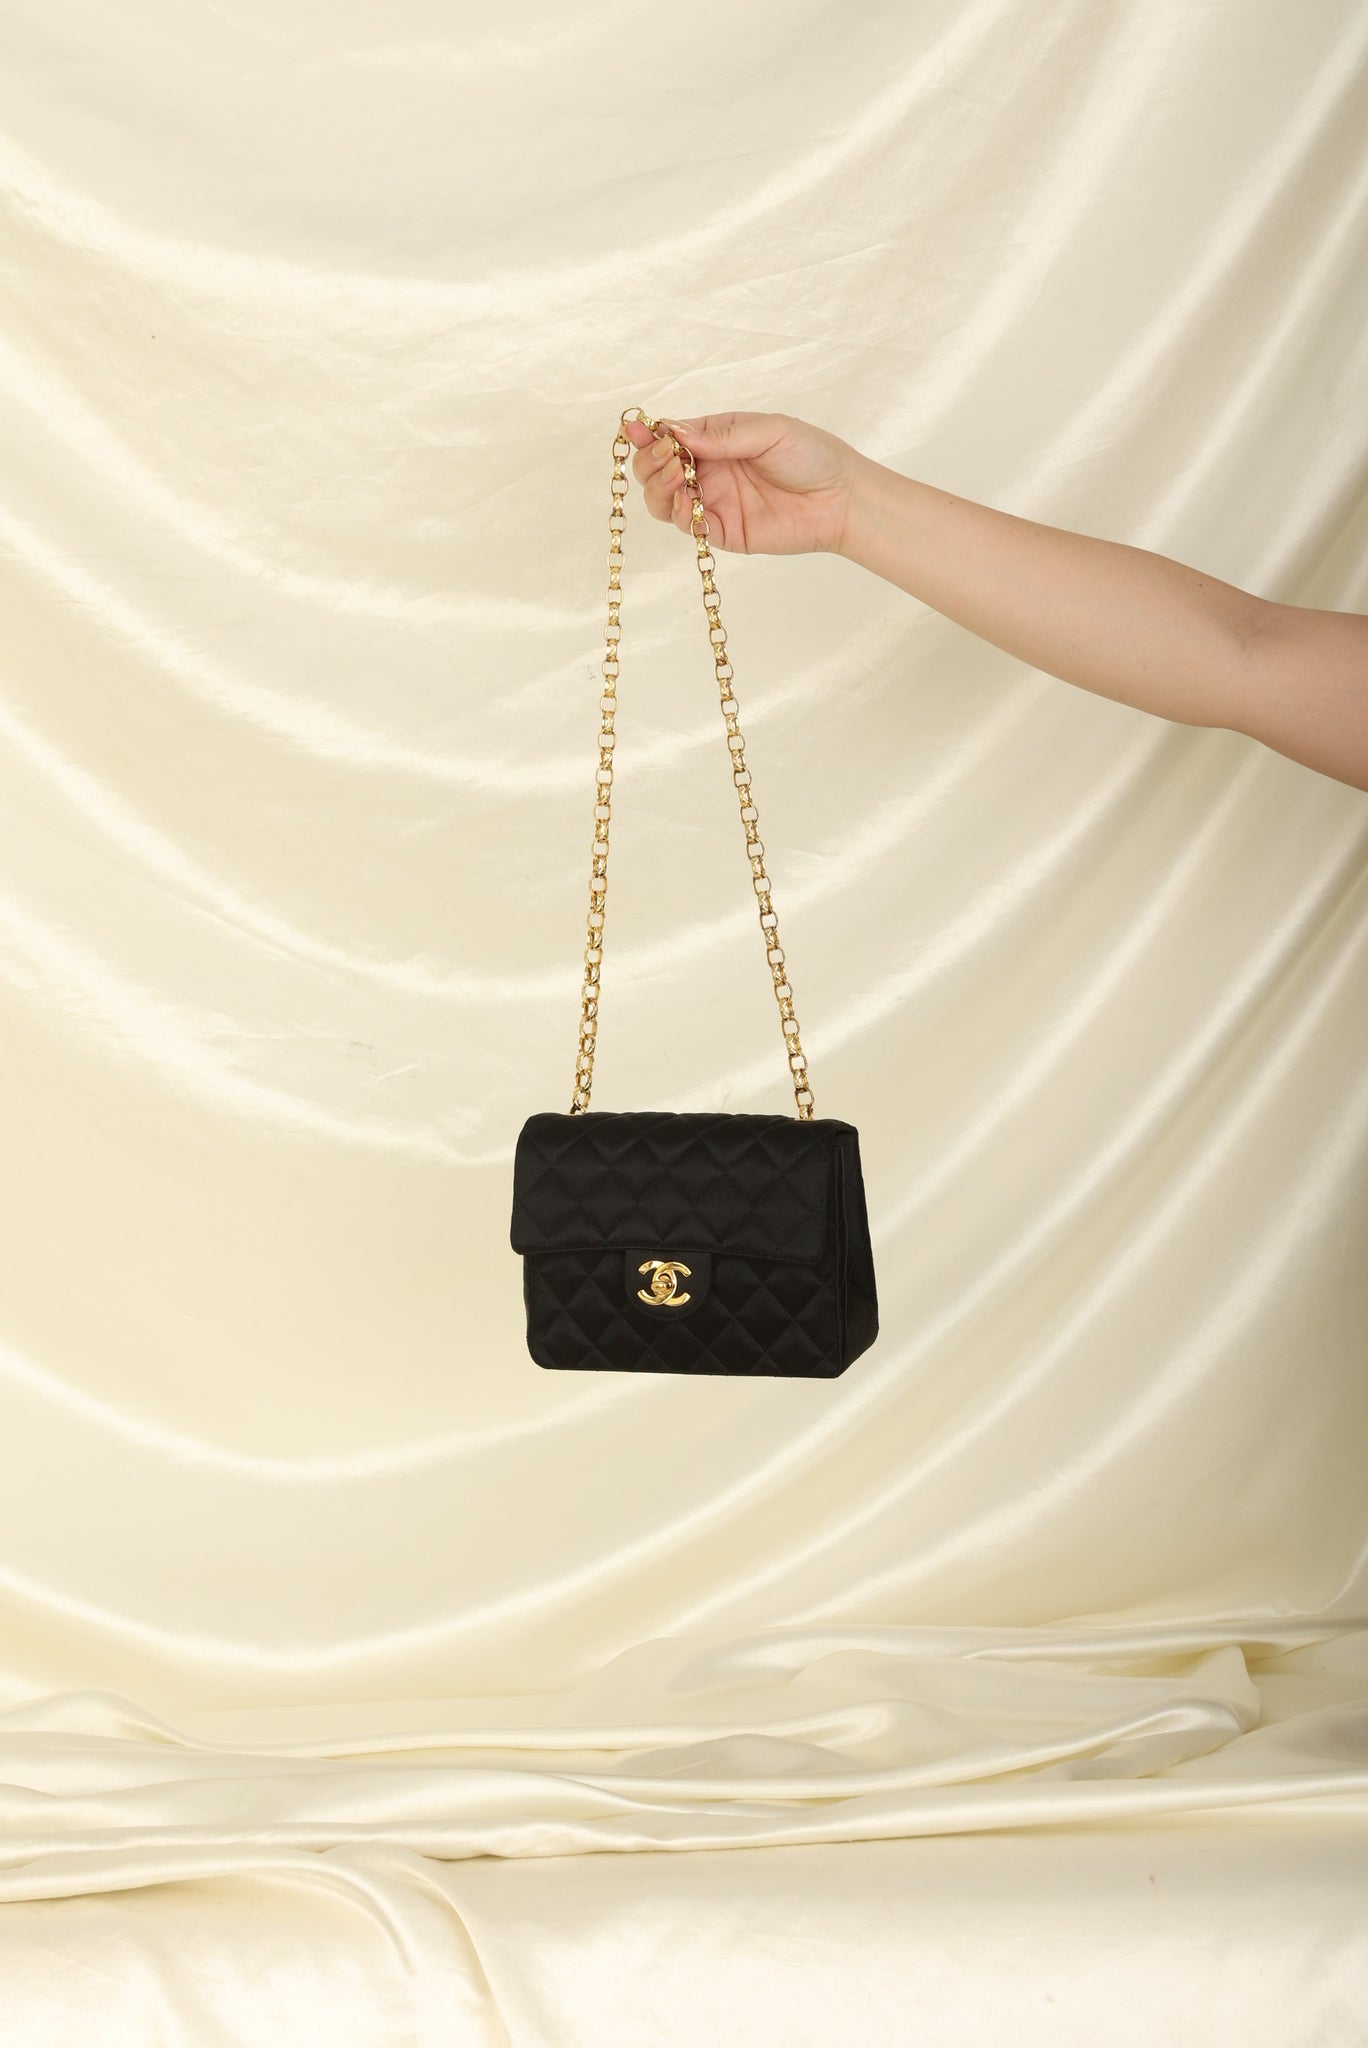 Chanel Mini Iconic Bag  Chanel mini square, Chanel mini flap